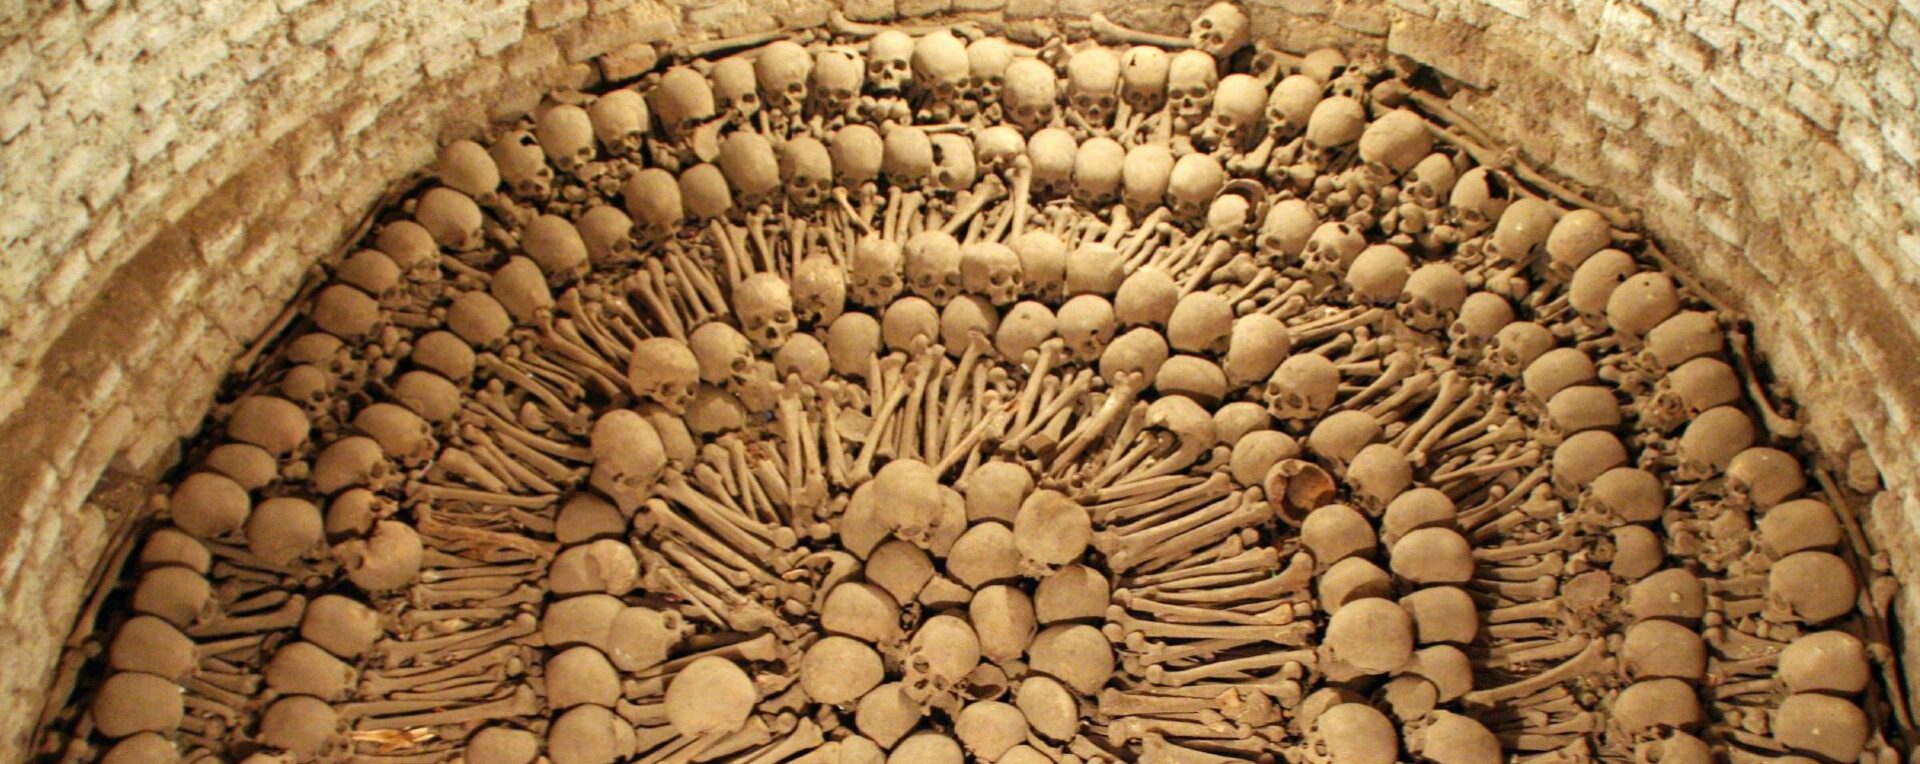 Le génocide rwandais a laissé de nombreux ossuaires | © Nathan Nelson/Flickr/CC BY-NC-SA 2.0